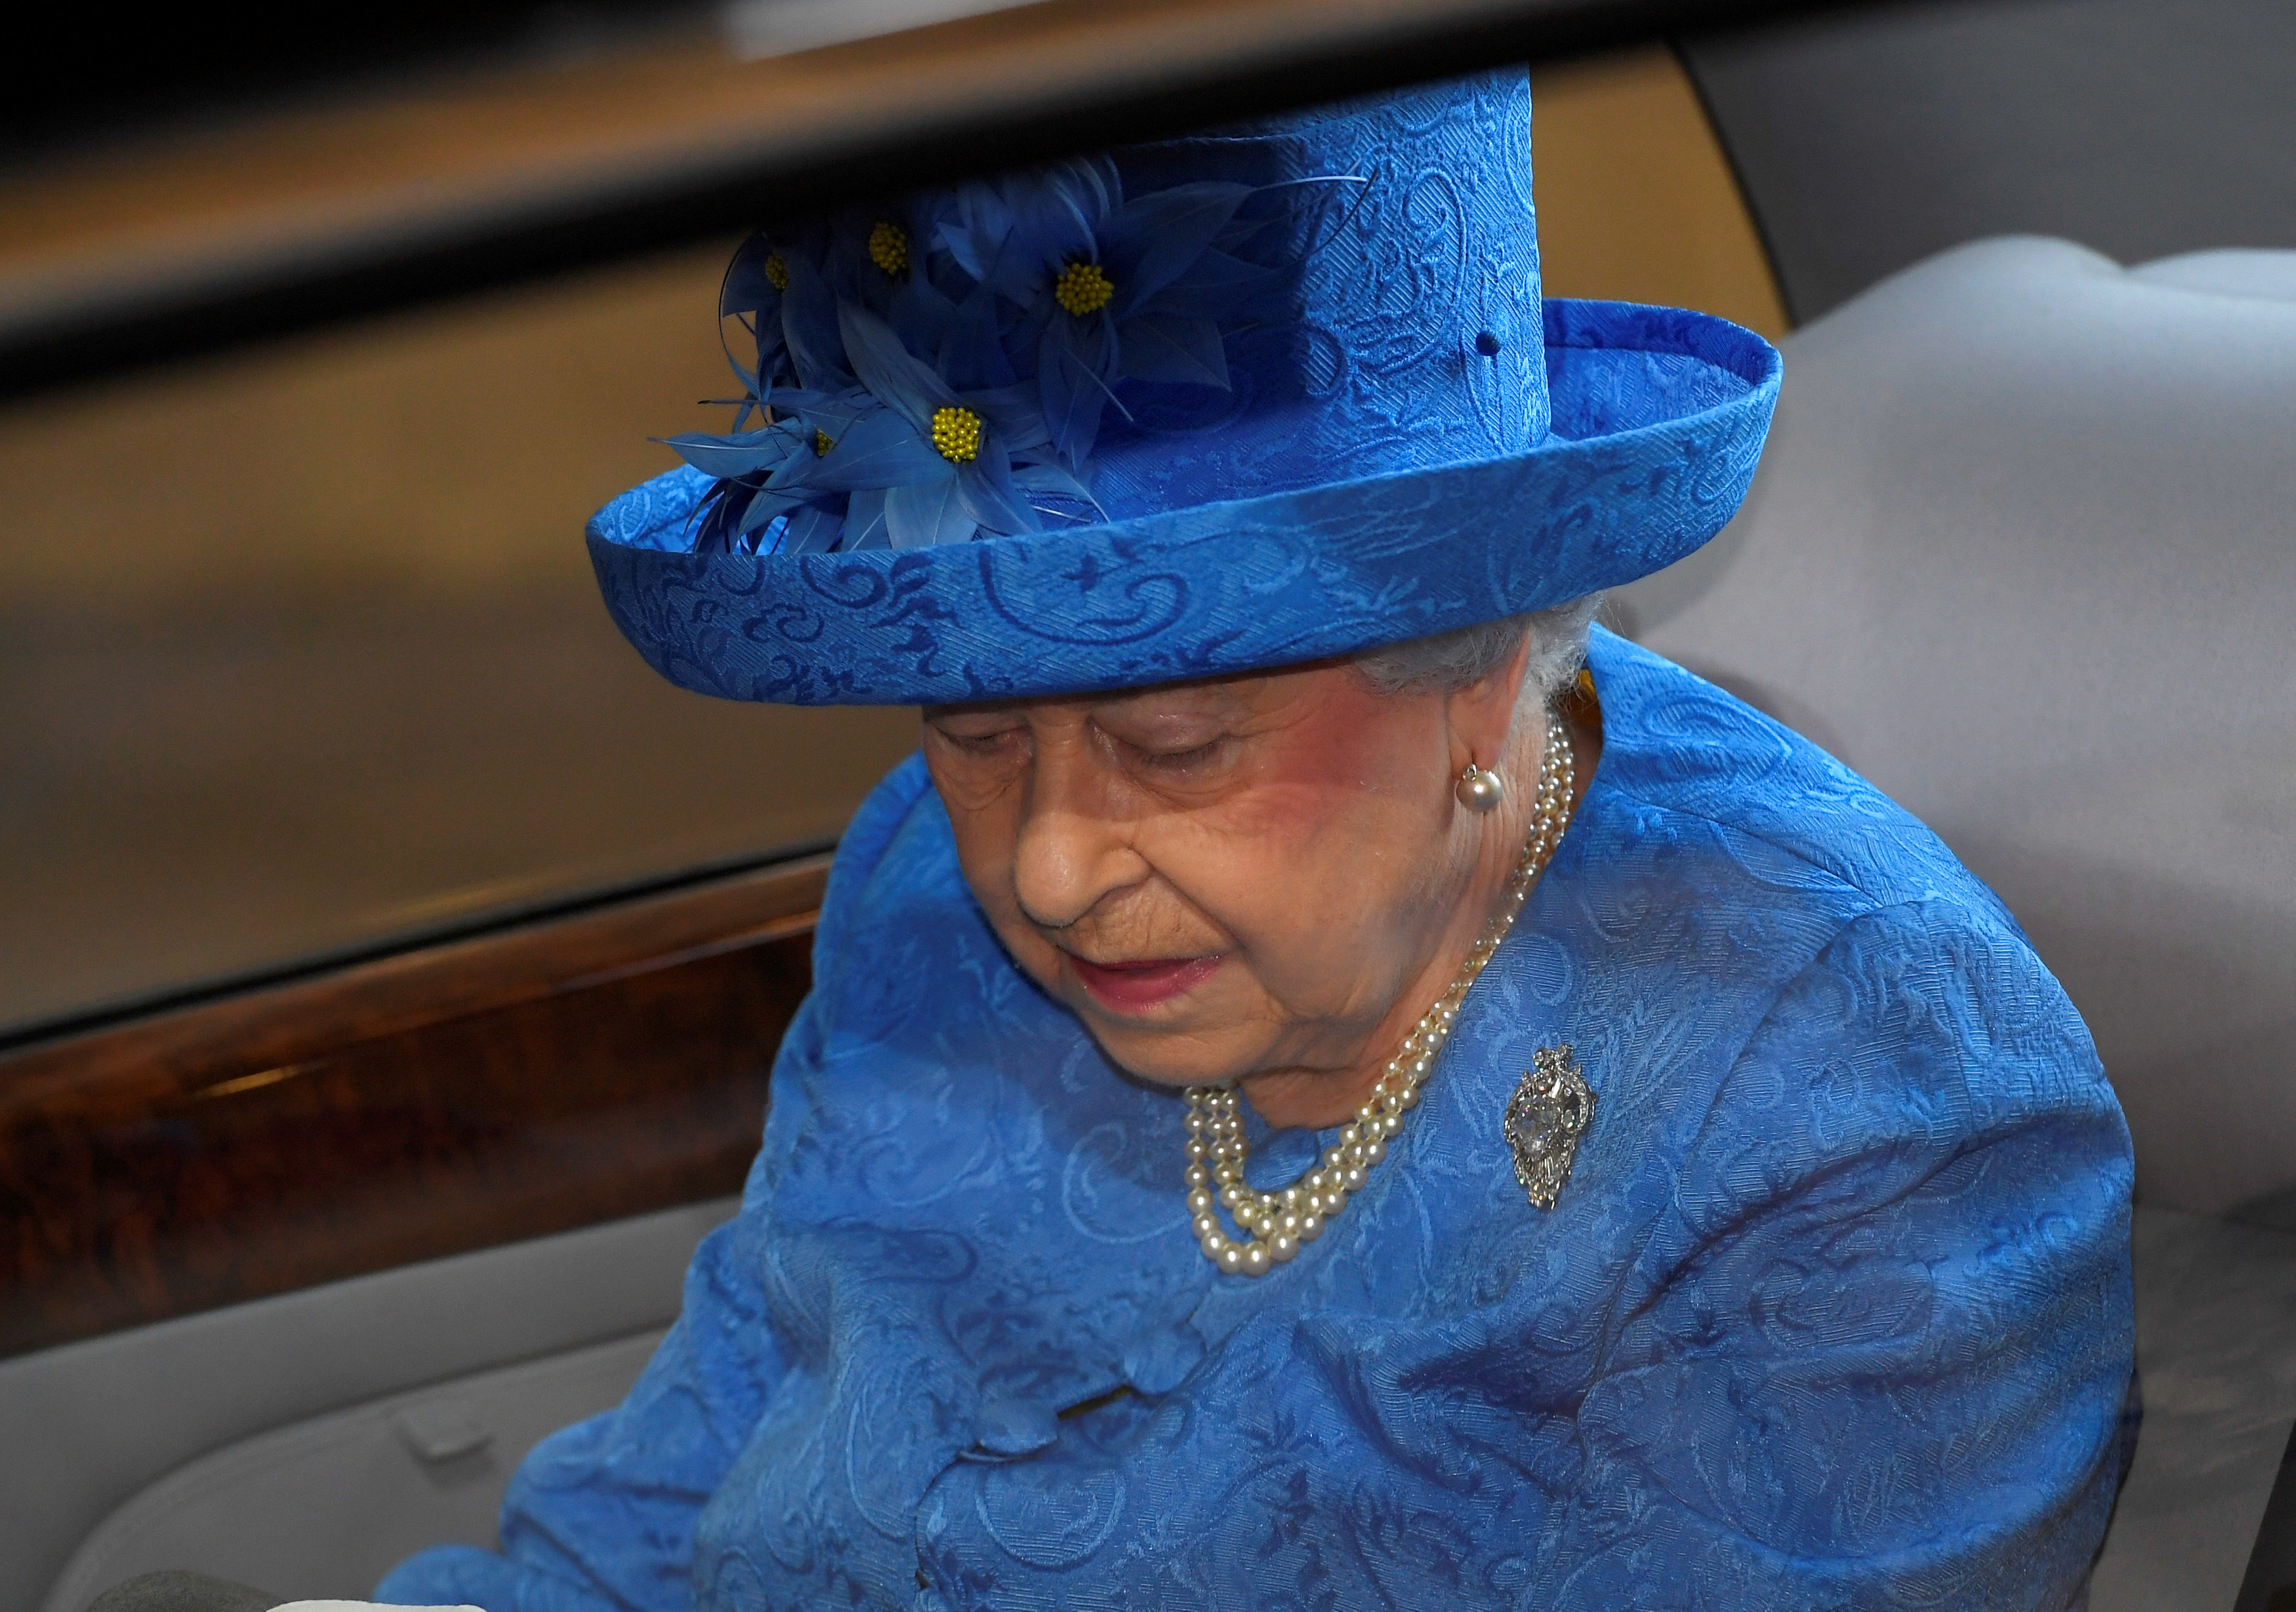 الملكة إليزابيث تصل مجلس العموم البريطانى لافتتاح جلسات البرلمان